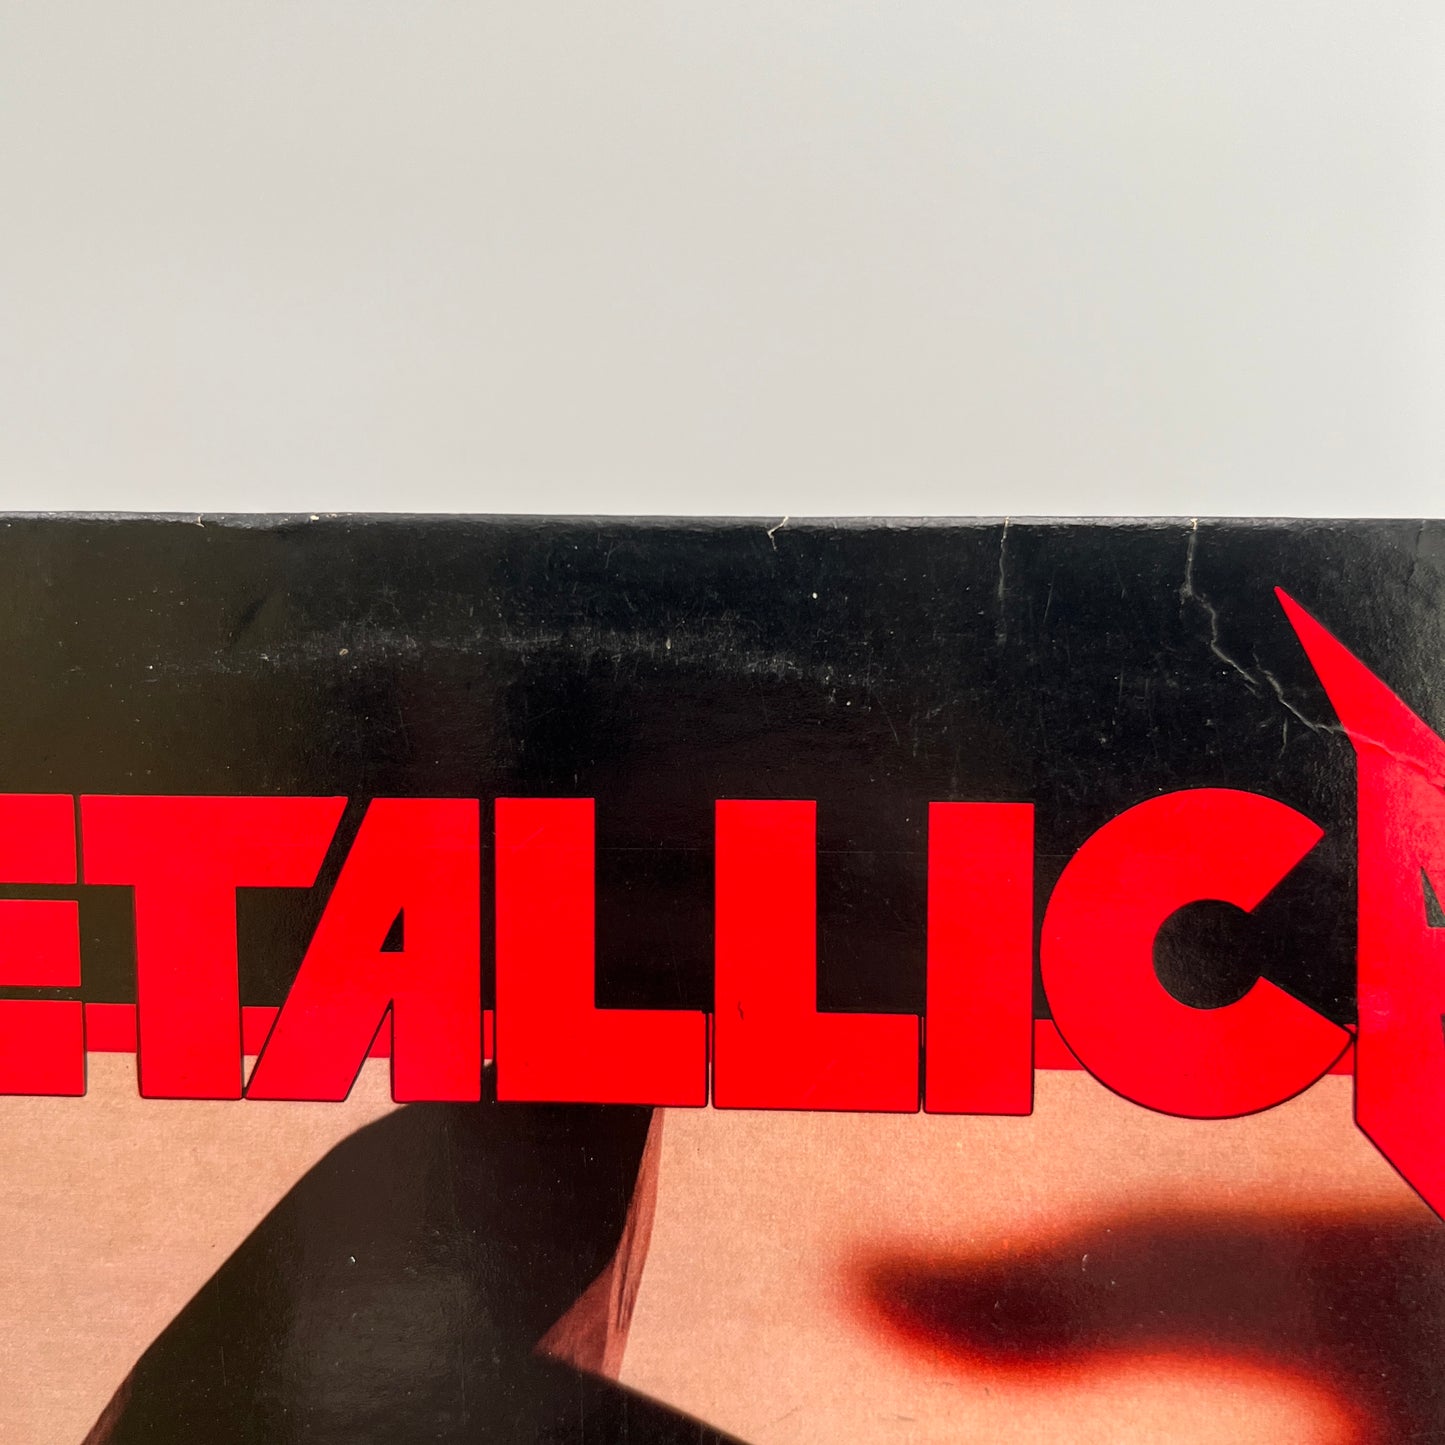 Metallica - Kill 'Em All Vinyl LP Original 1st Press Megaforce.